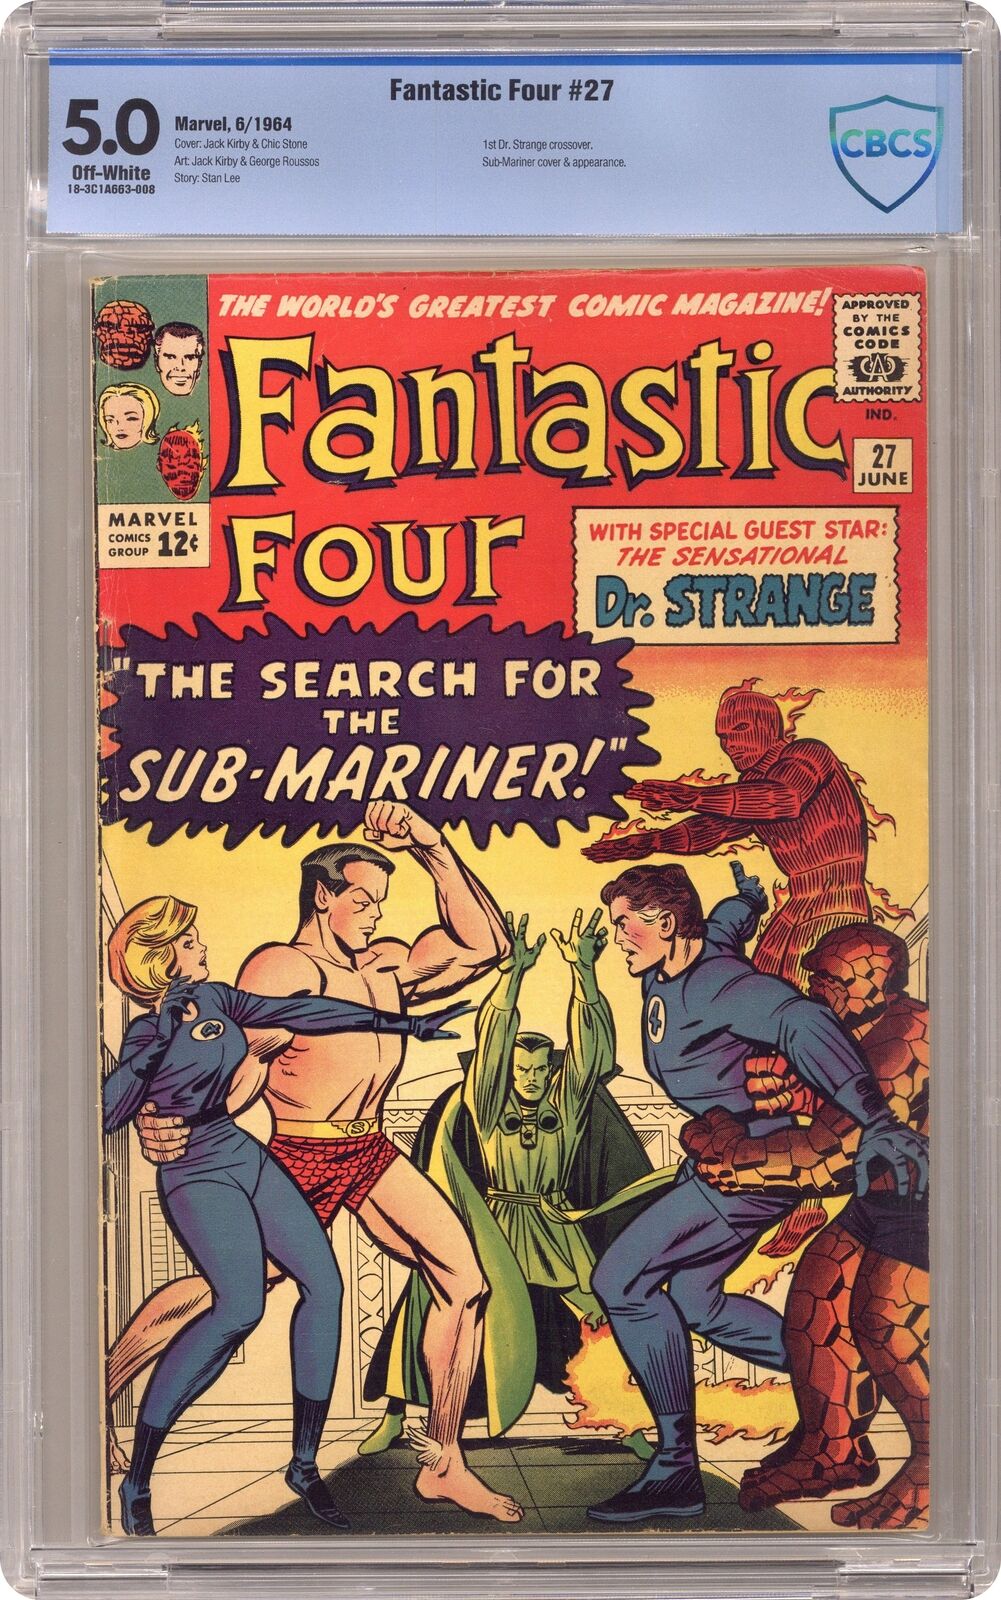 Fantastic Four #27 CBCS 5.0 1964 18-3C1A663-008